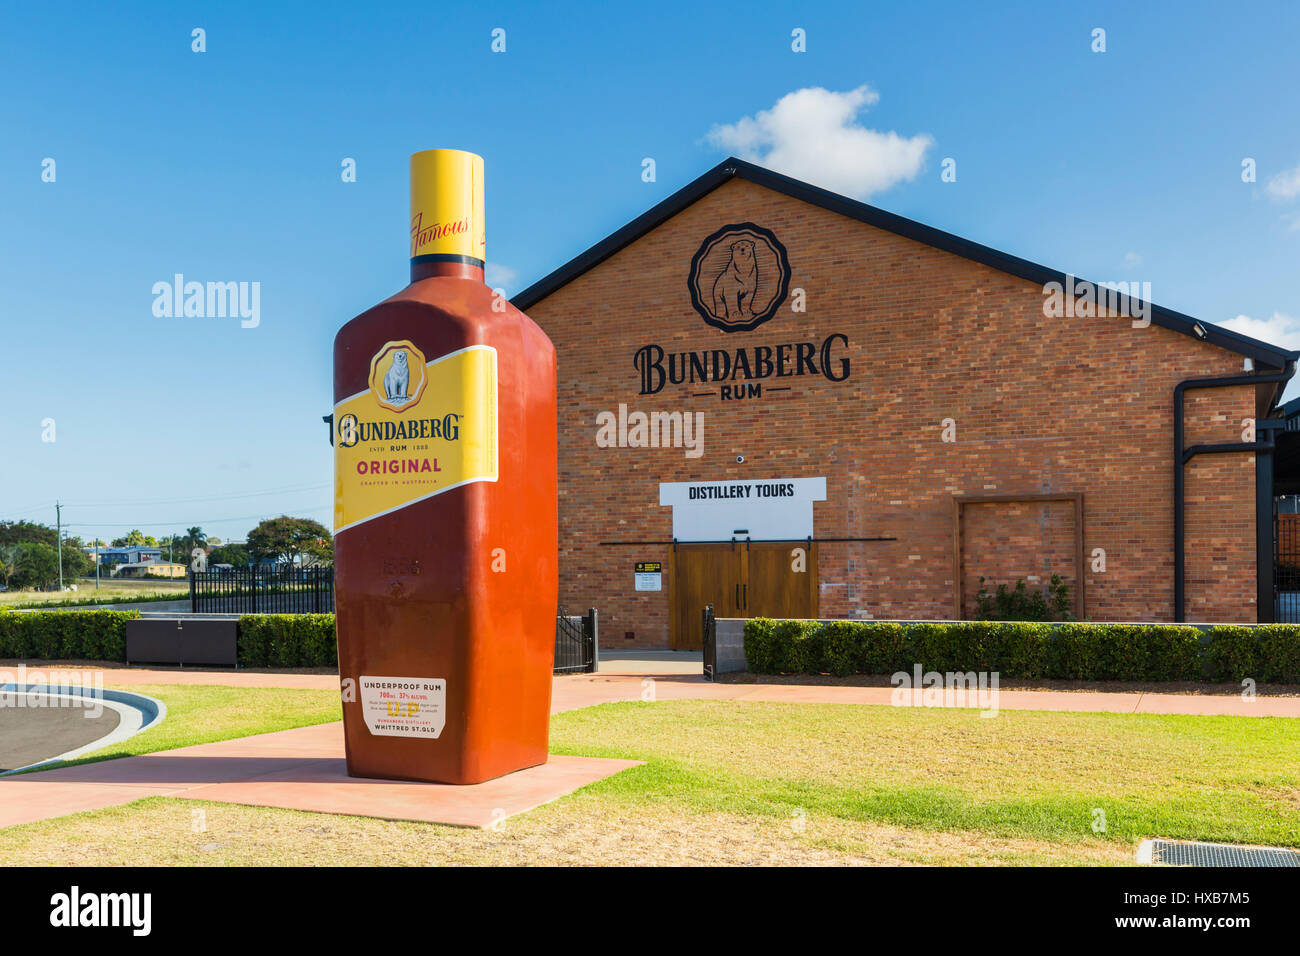 Das Besucherzentrum in der Bundaberg Rum Destillerie, Heimat von Australiens ikonische Bundy Rum, seit 1888 in Betrieb.  Das neue Besucherzentrum wurde eröffnet Stockfoto